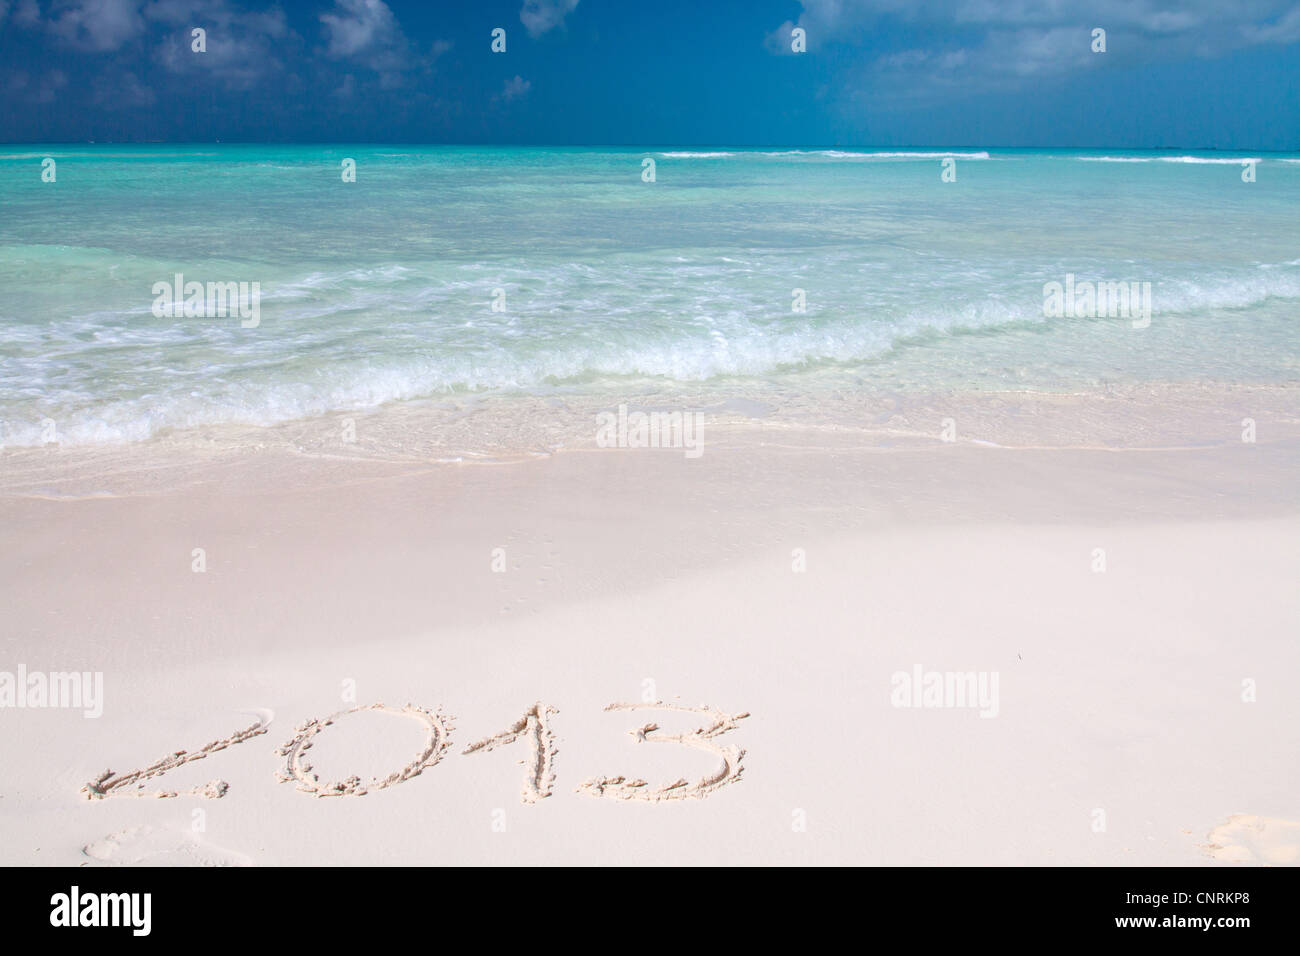 Año 2013 escritos a mano en la arena blanca frente al mar Foto de stock